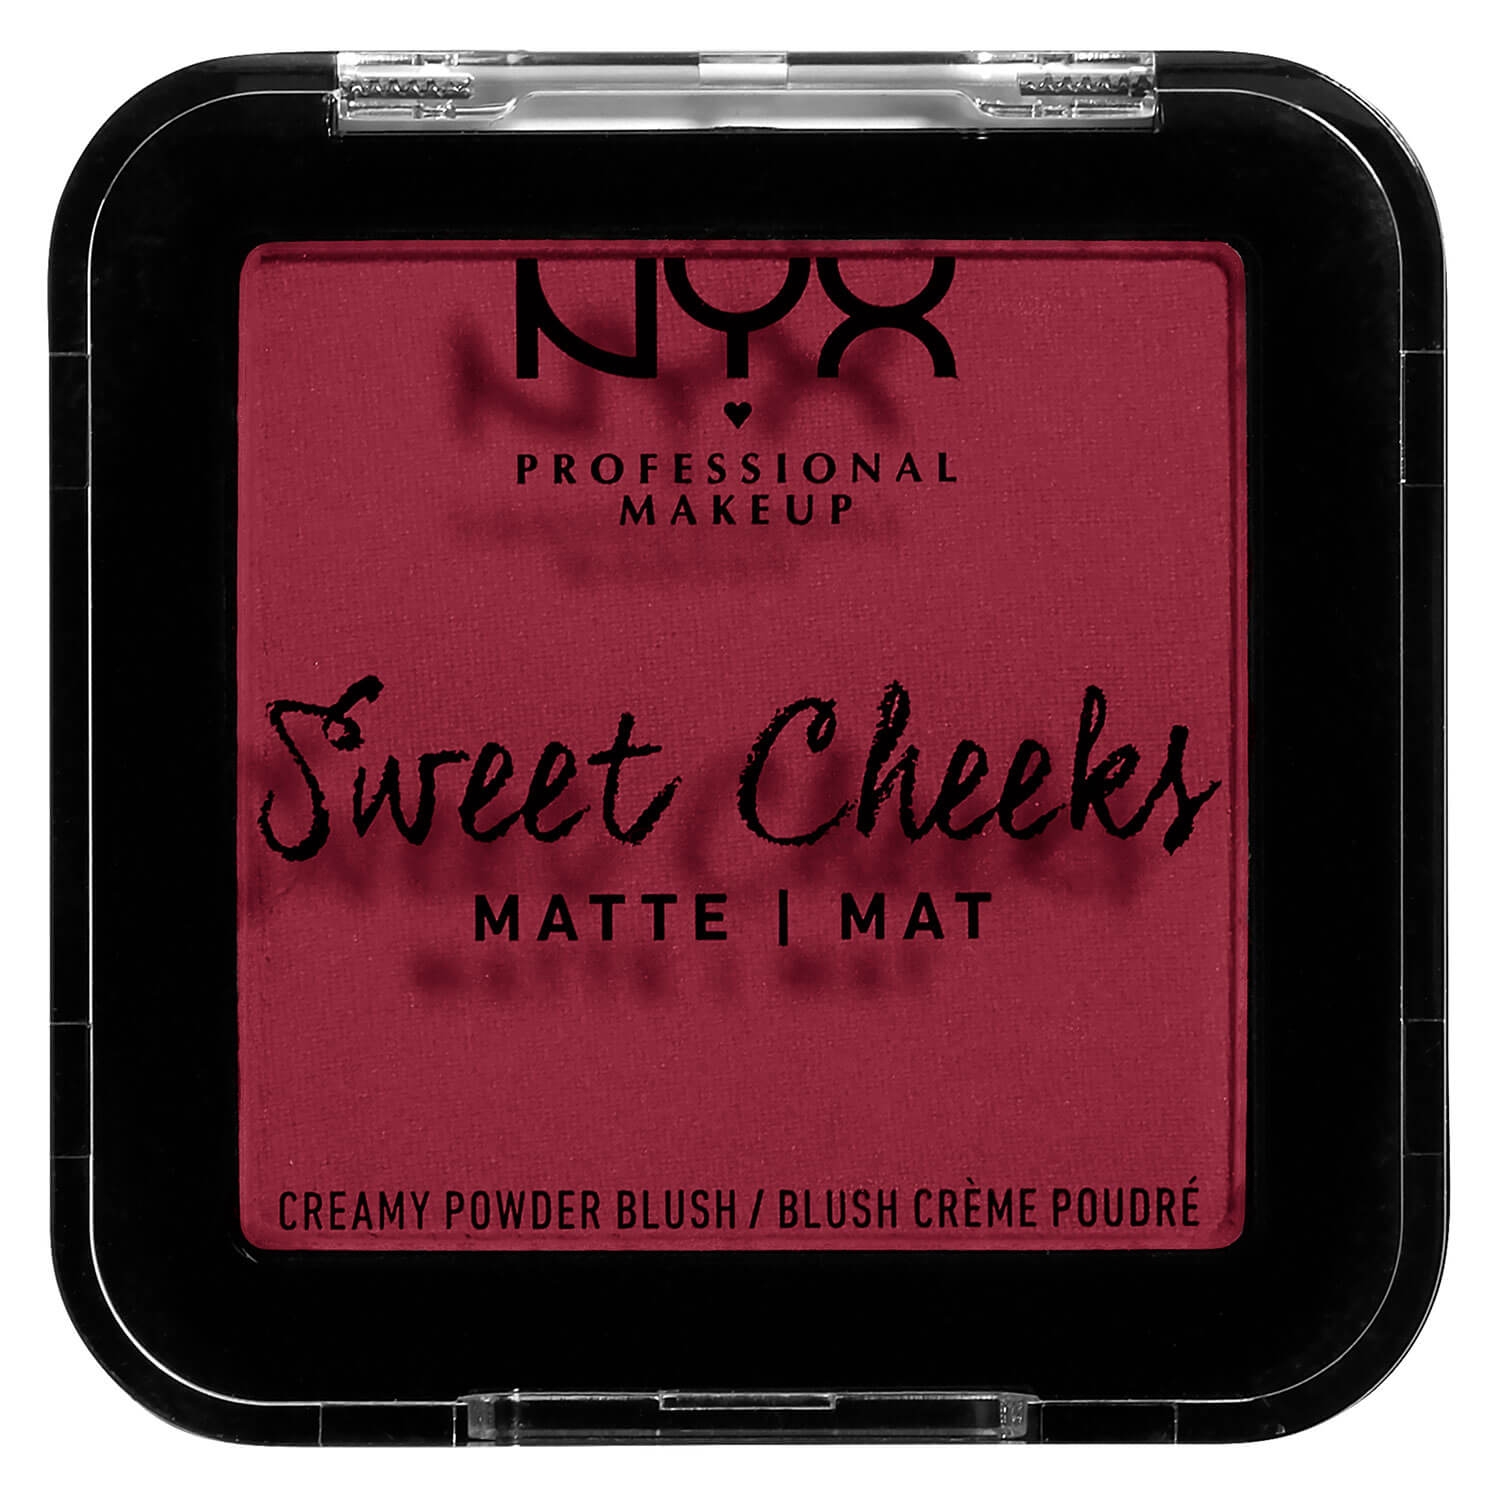 Produktbild von Sweet Cheeks - Creamy Powder Blush Matte Risky Business